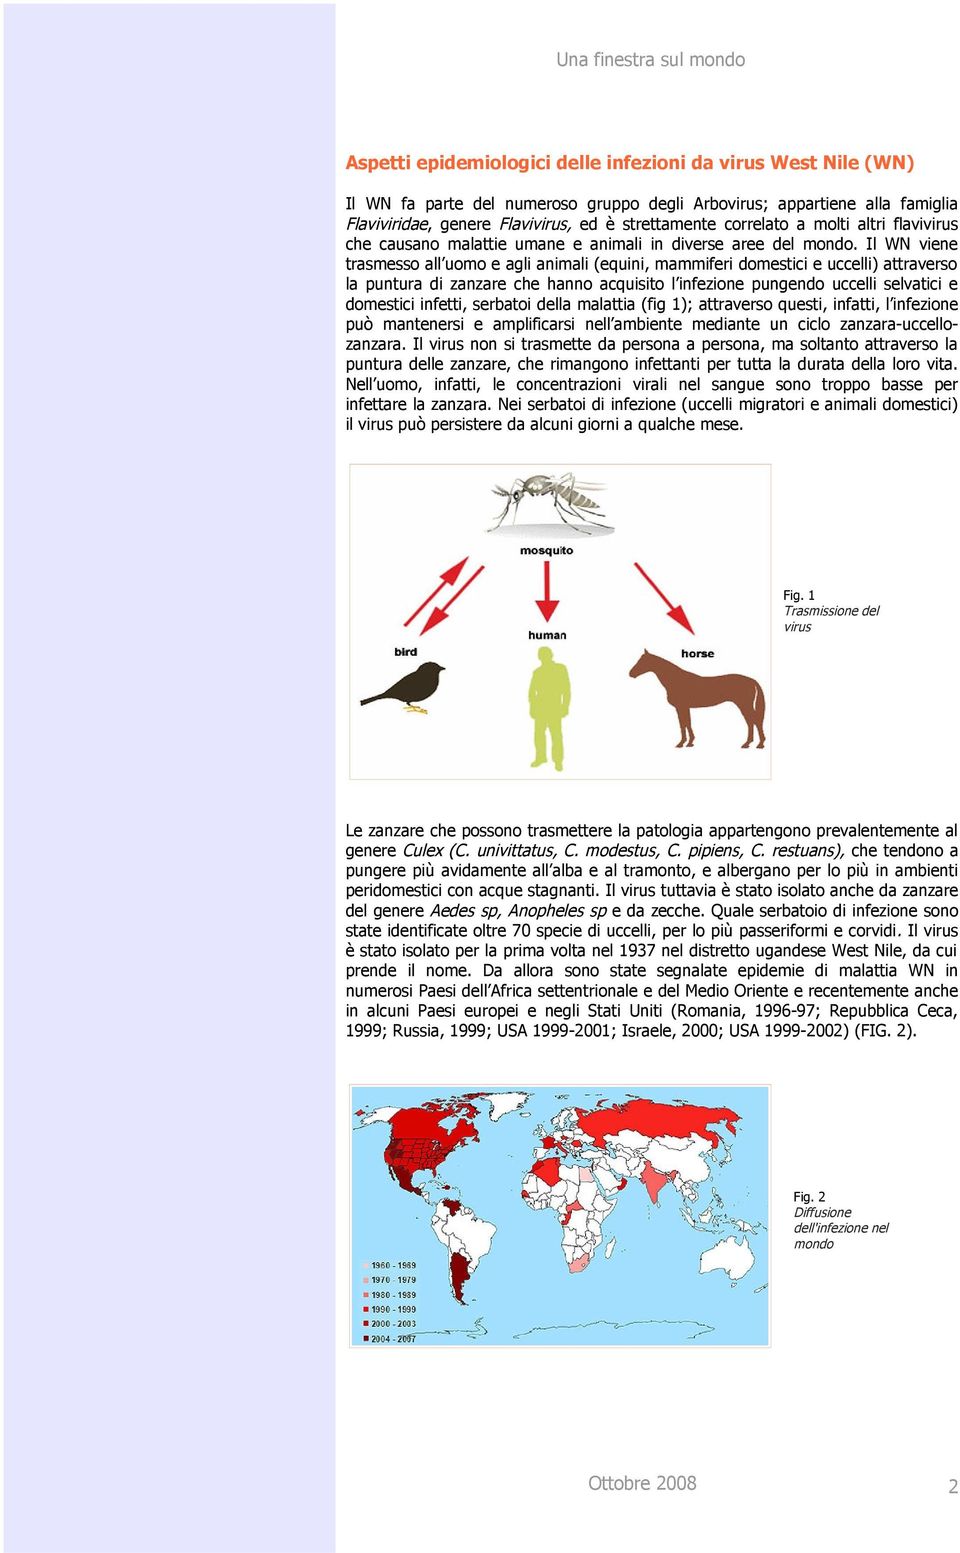 Il WN viene trasmesso all uomo e agli animali (equini, mammiferi domestici e uccelli) attraverso la puntura di zanzare che hanno acquisito l infezione pungendo uccelli selvatici e domestici infetti,